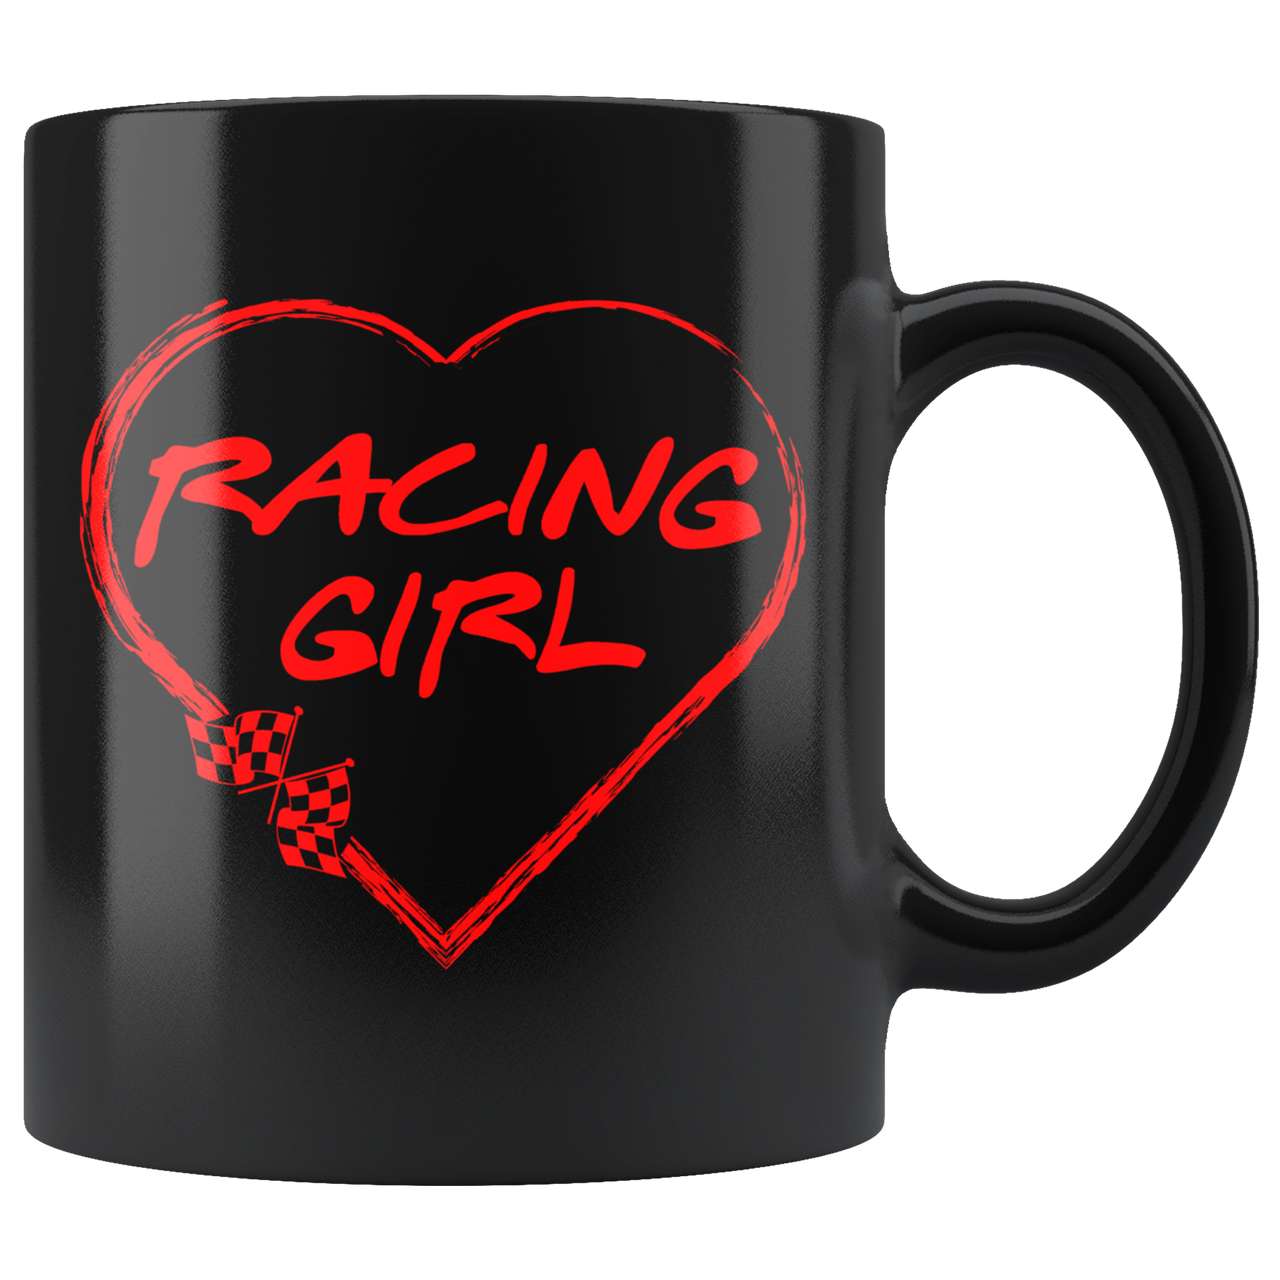 Racing Girl Heat Mug!